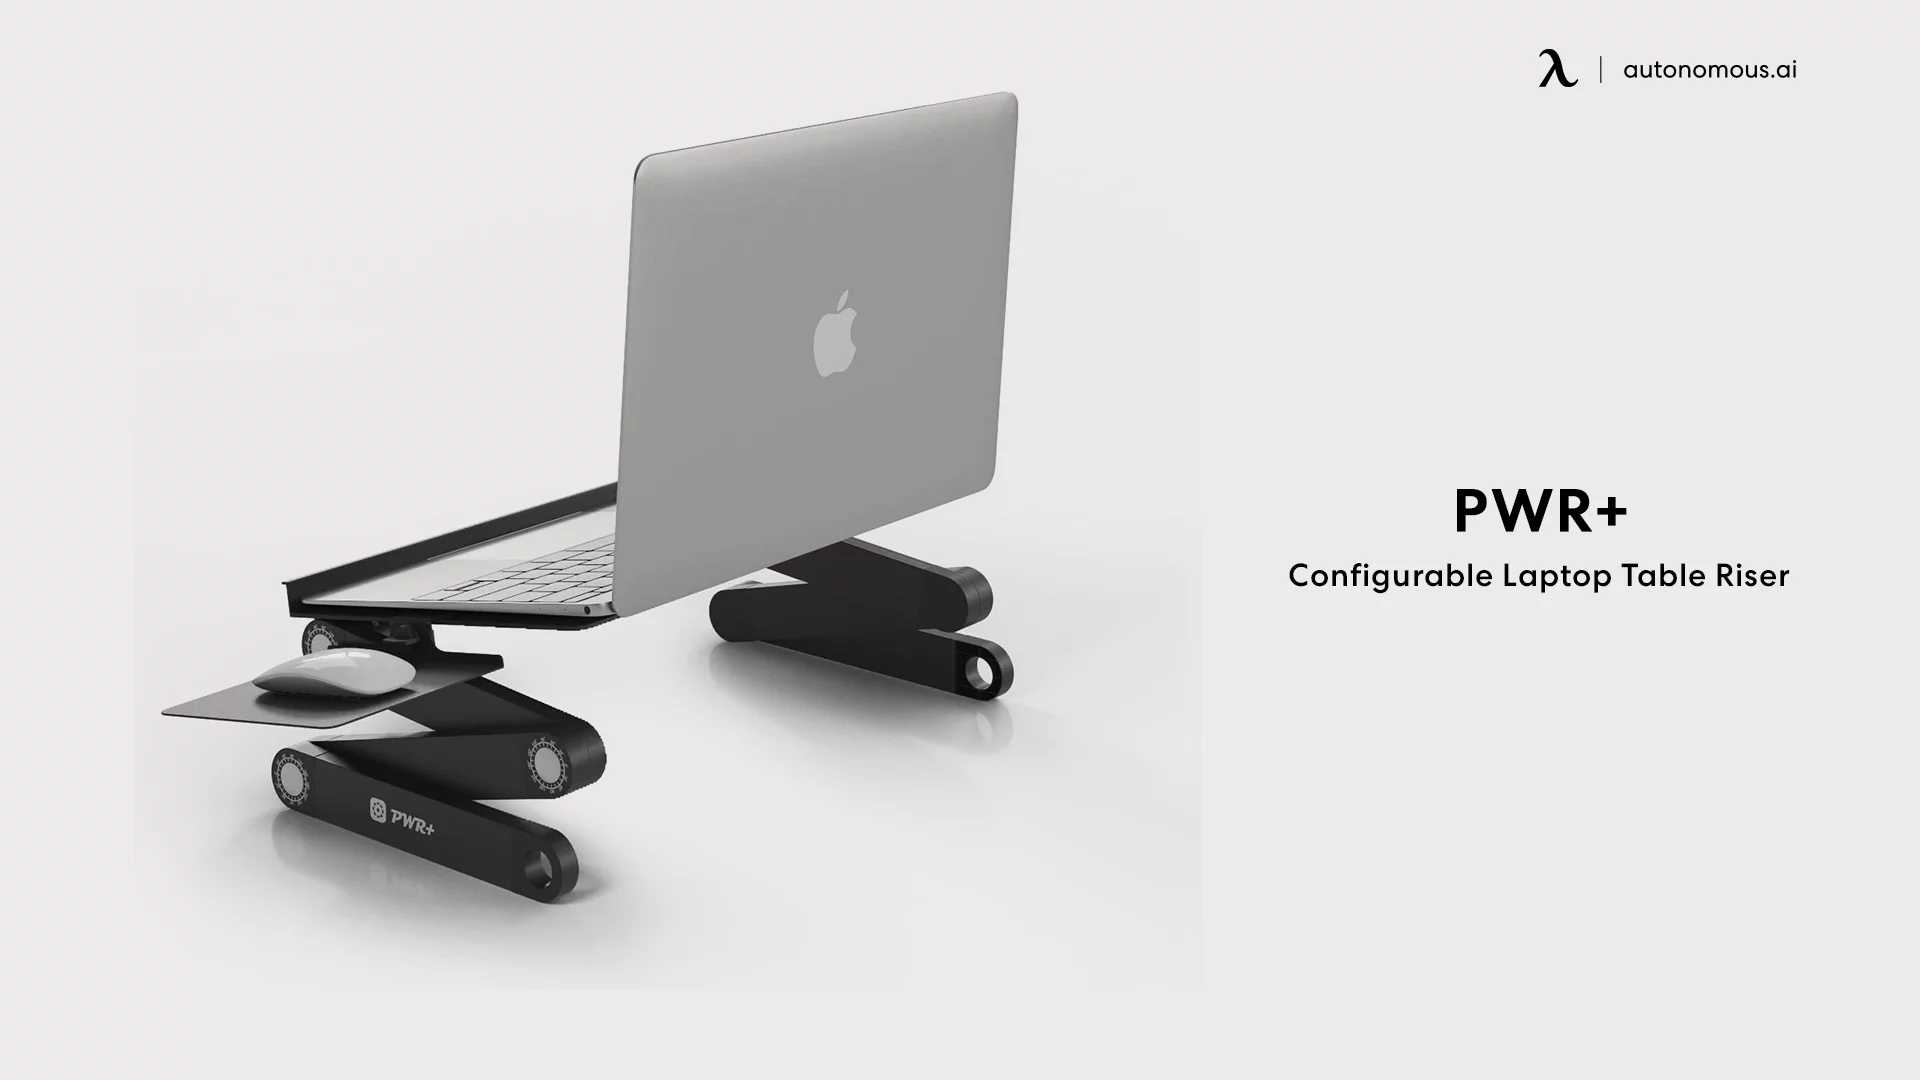 PWR+ Configurable Laptop Table Riser